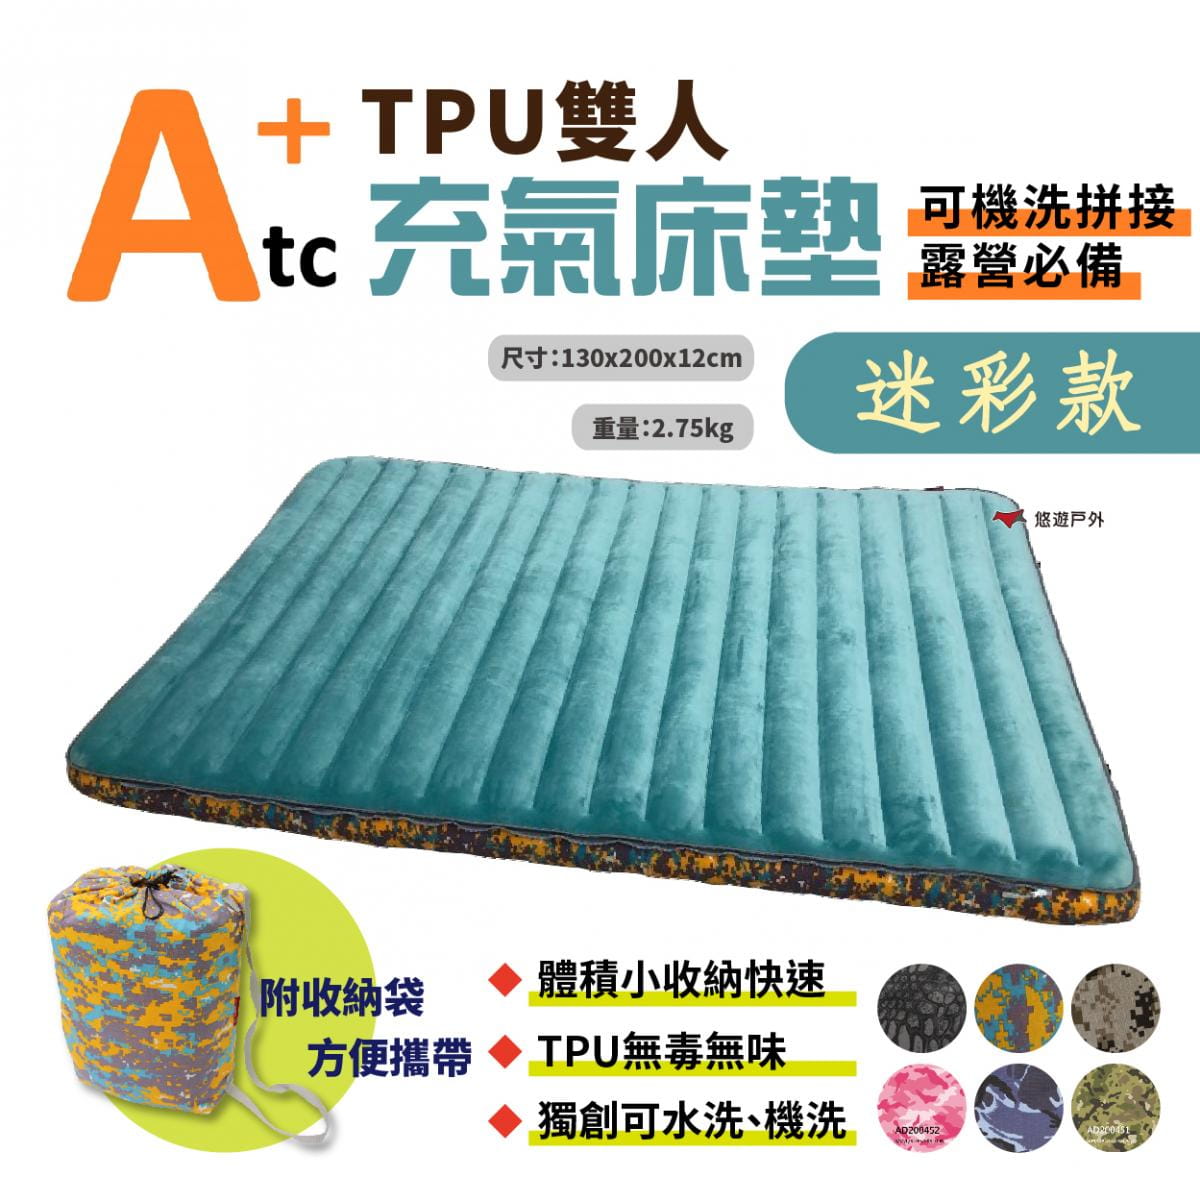 【ATC】TPU組合充氣床墊_130cm (悠遊戶外) 0